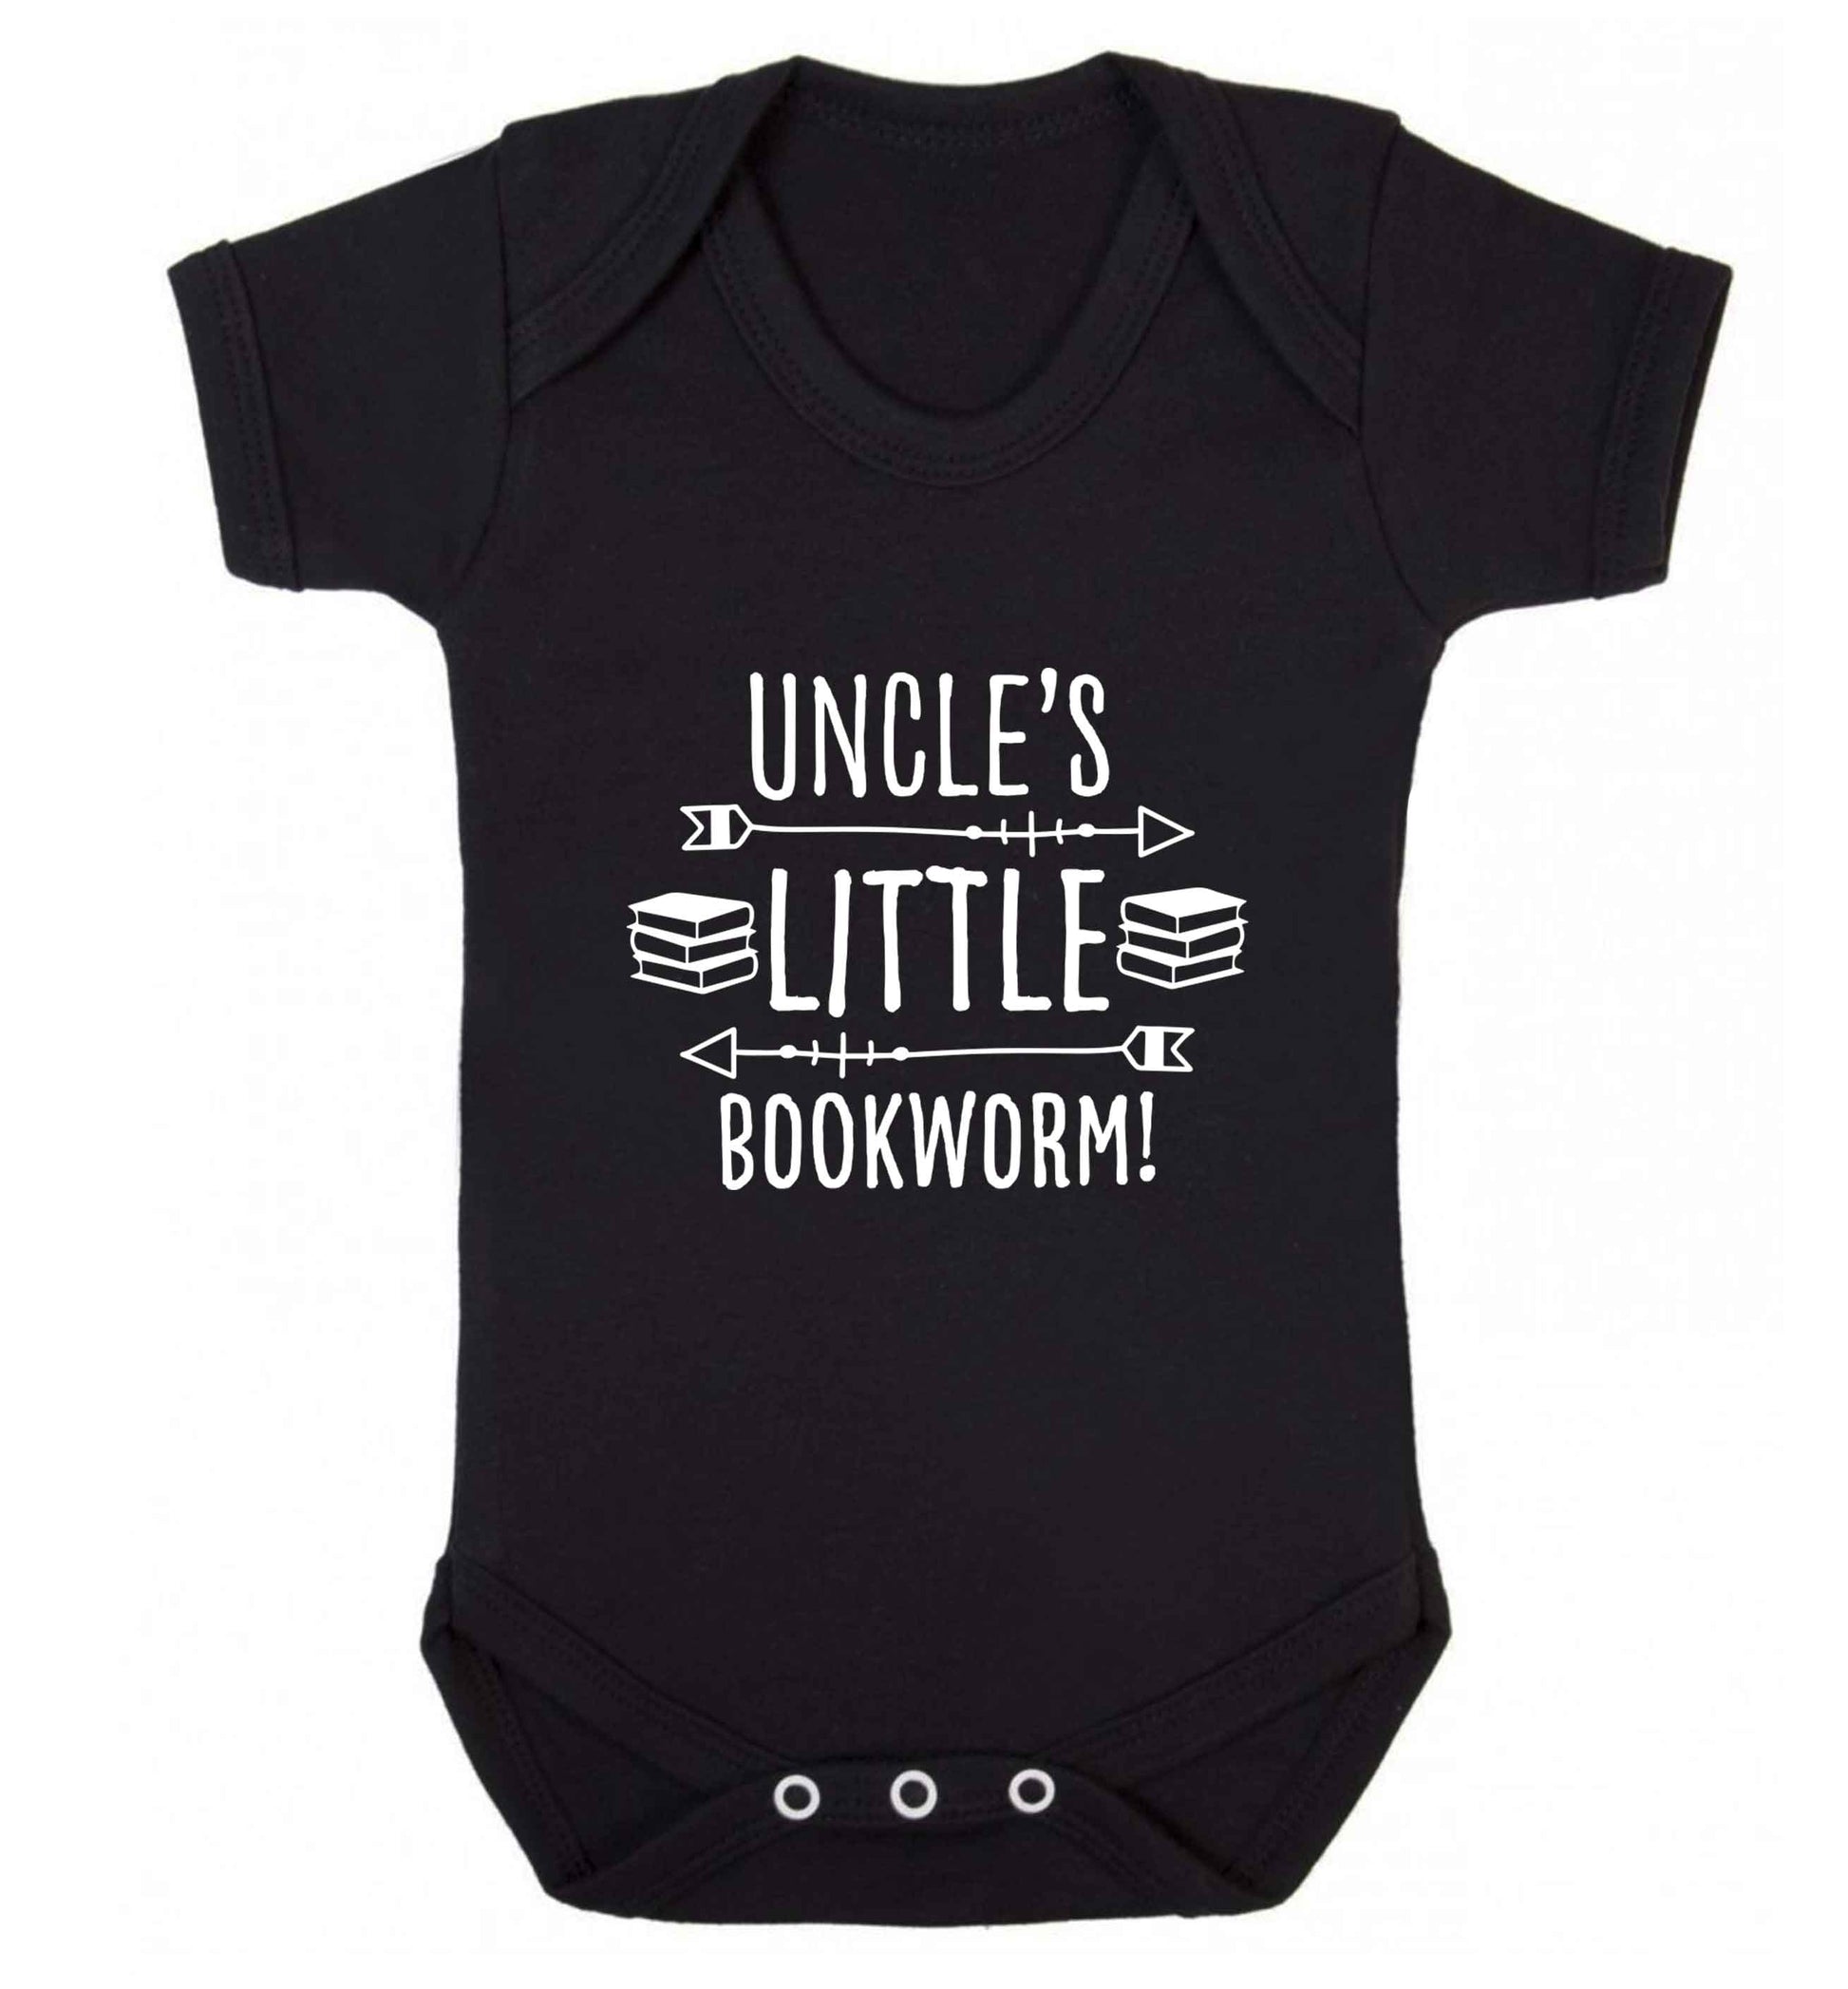 Uncle's little bookworm baby vest black 18-24 months